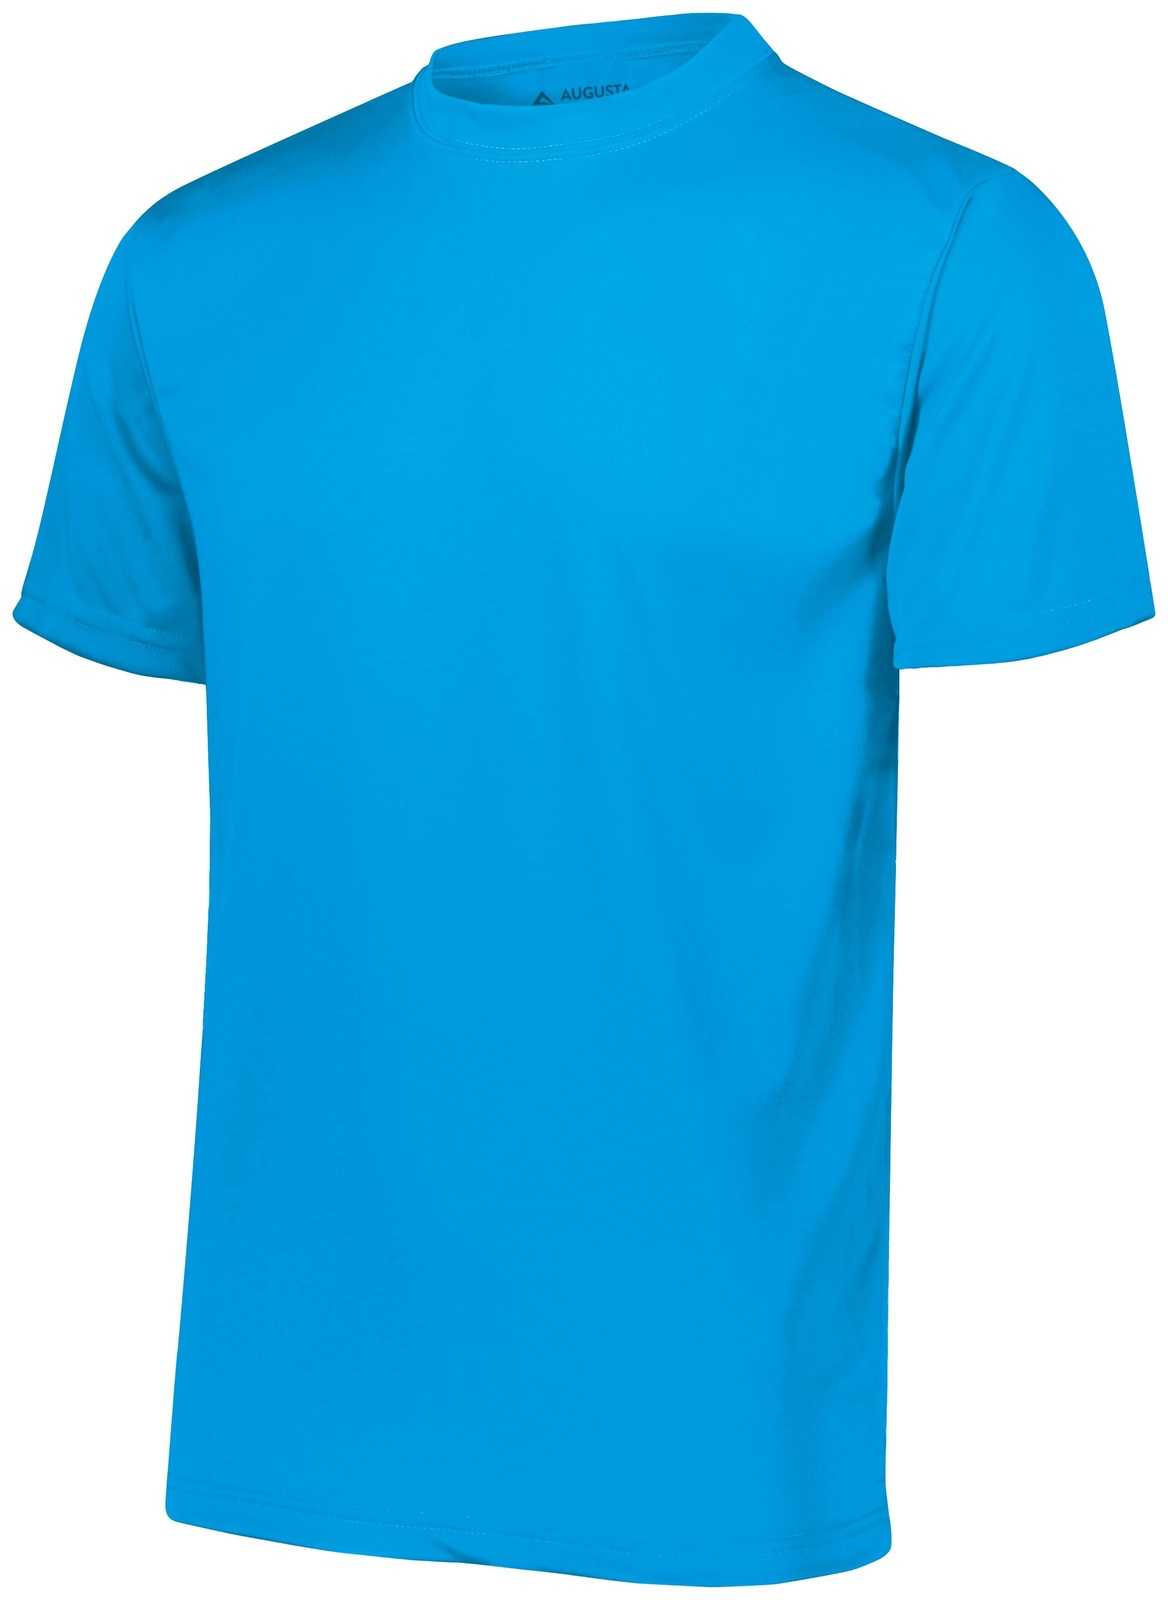 Augusta 790 NexGen Wicking T-Shirt - Power Blue - HIT a Double